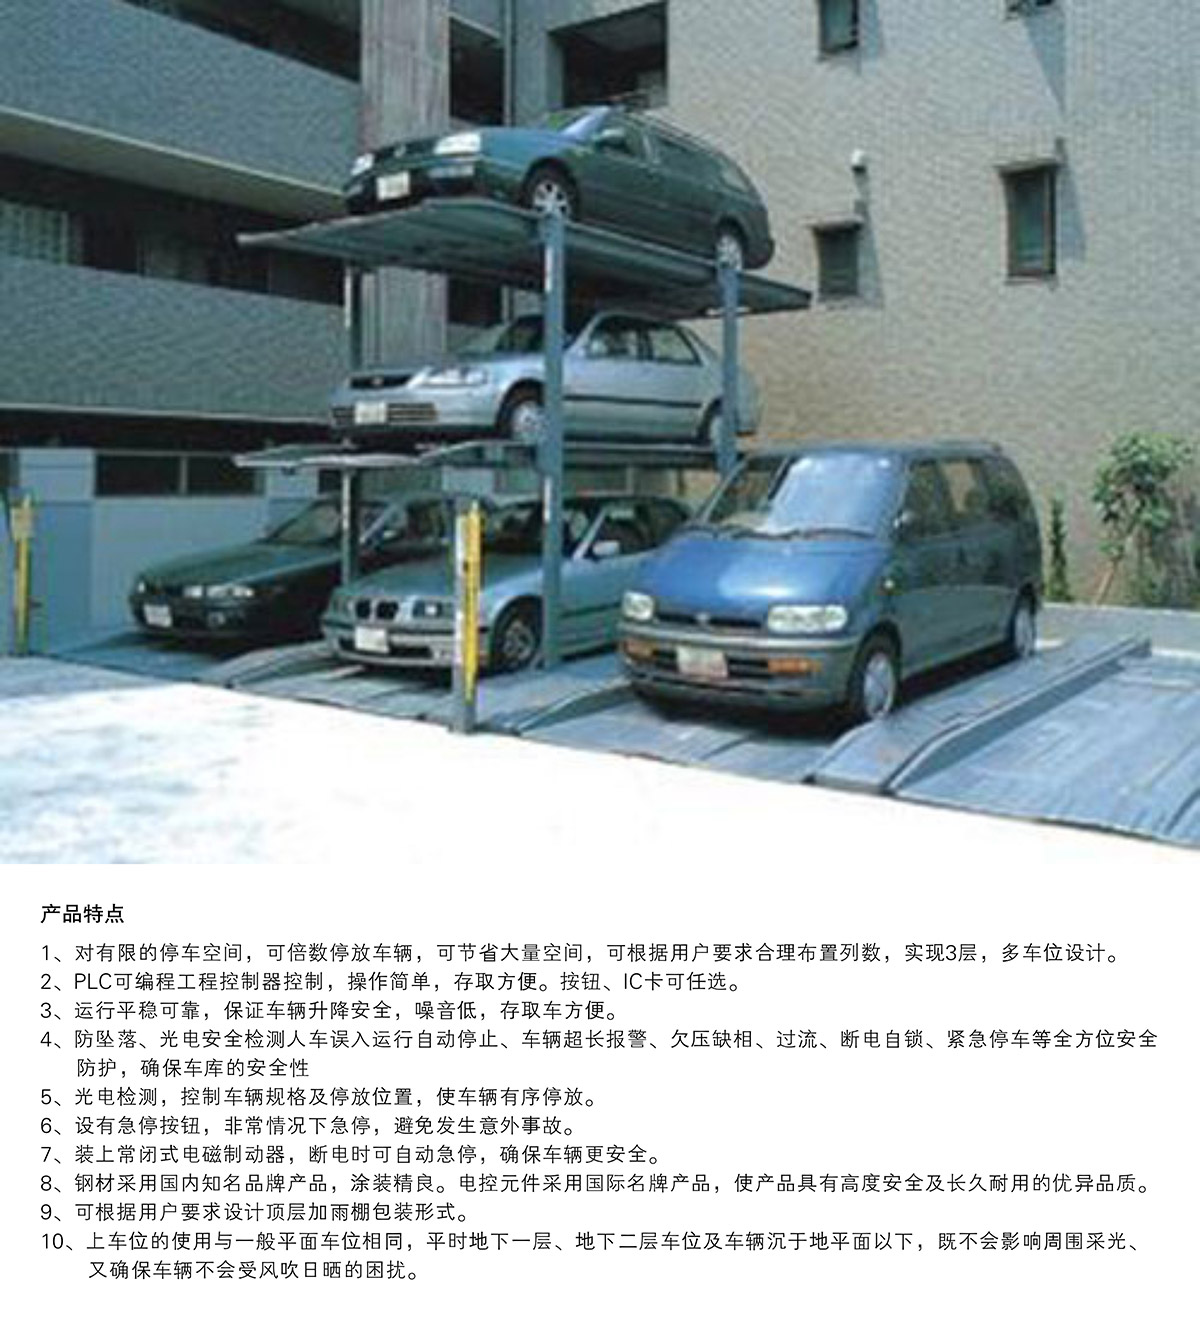 机械车位PJS3D2三层地坑简易升降停车设备产品特点.jpg